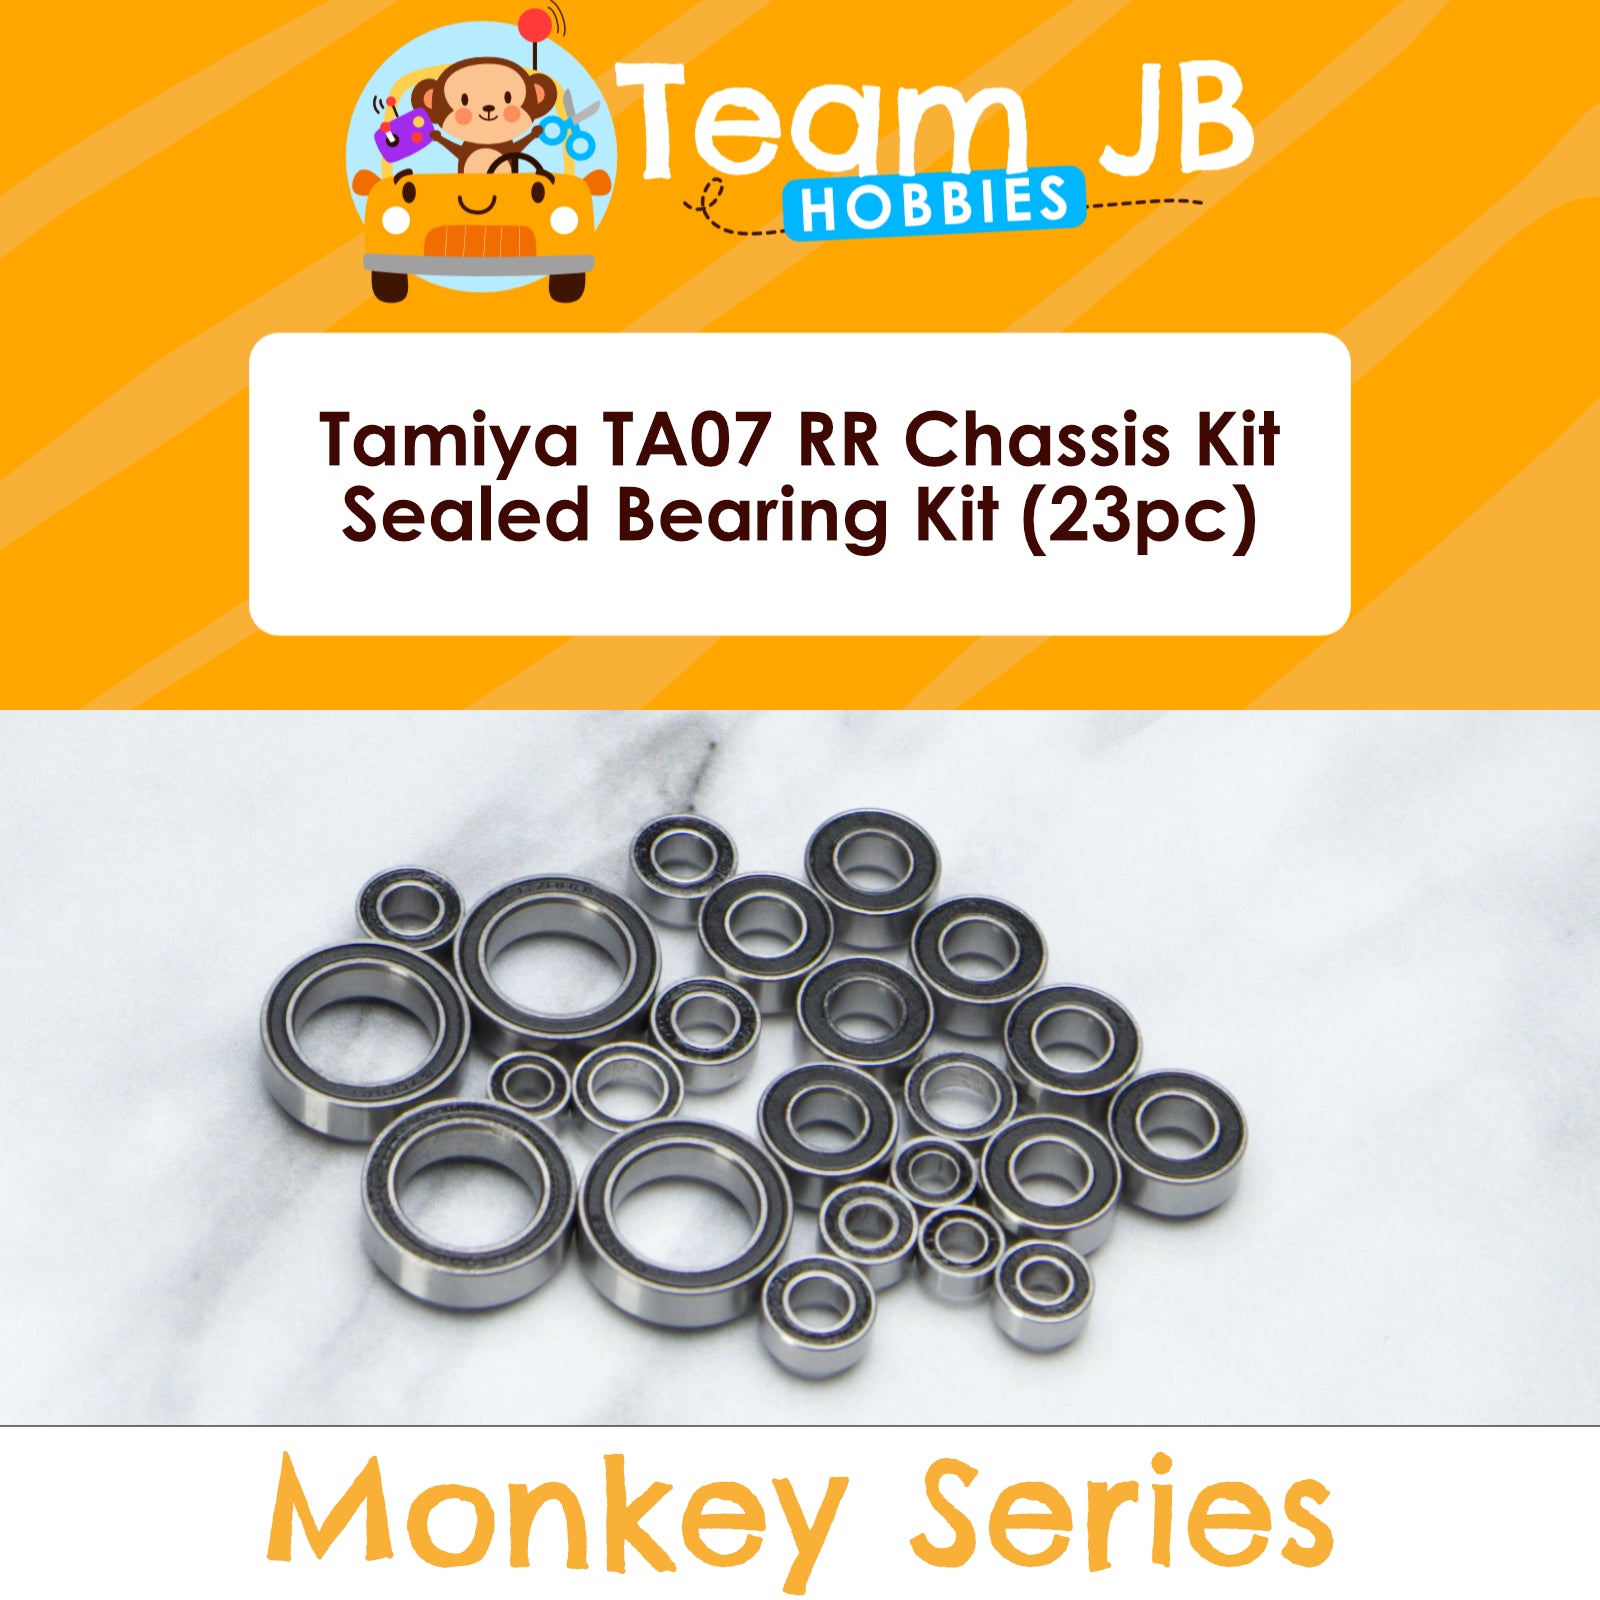 Tamiya TA07 RR Chassis Kit - Sealed Bearing Kit